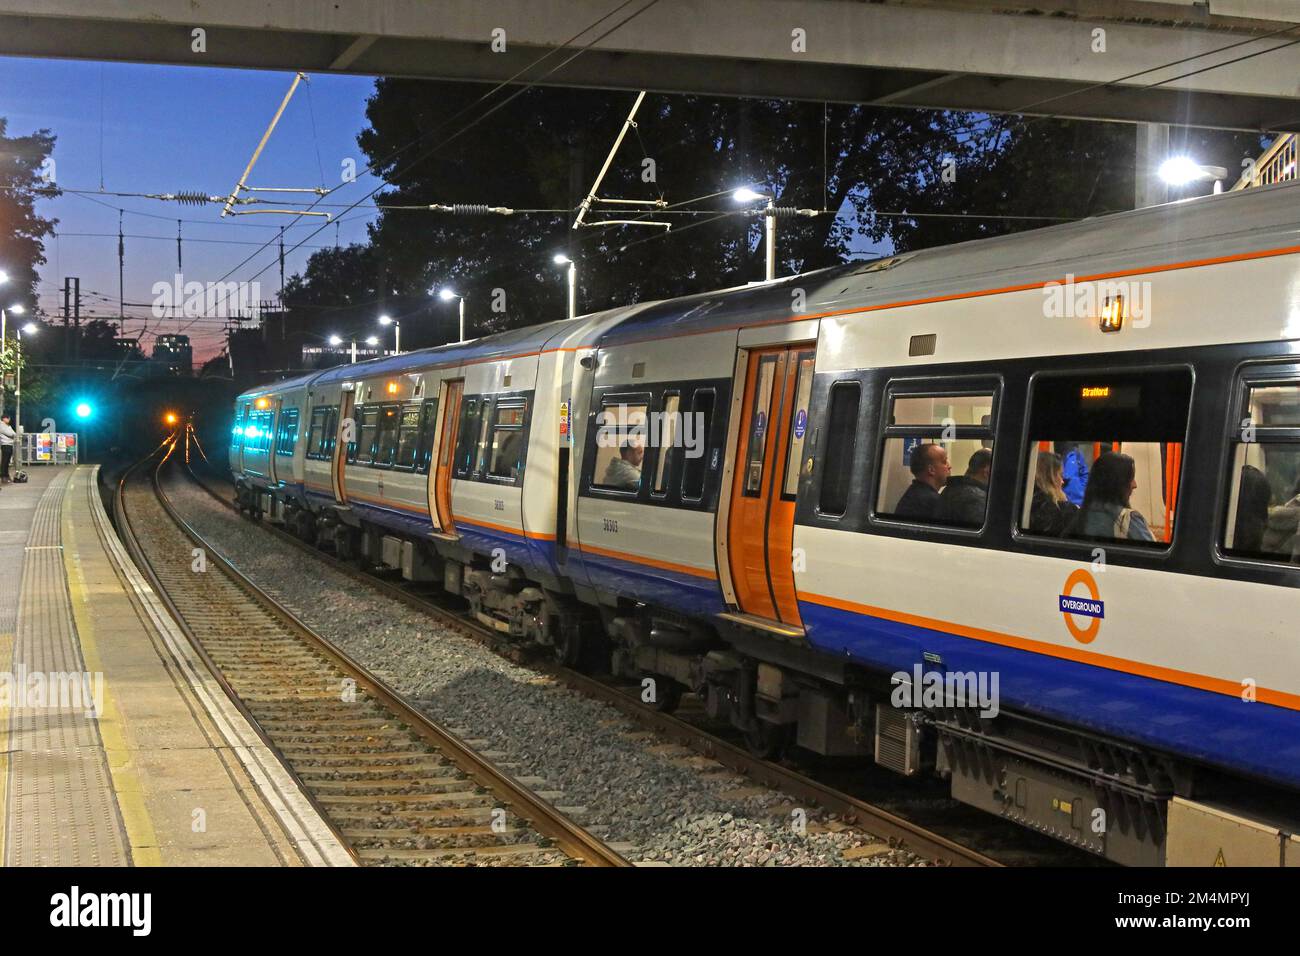 En direction de Stratford, train terrestre de Londres, à la gare de Hackney Downs, Londres, Angleterre, Royaume-Uni, E8 1LA Banque D'Images